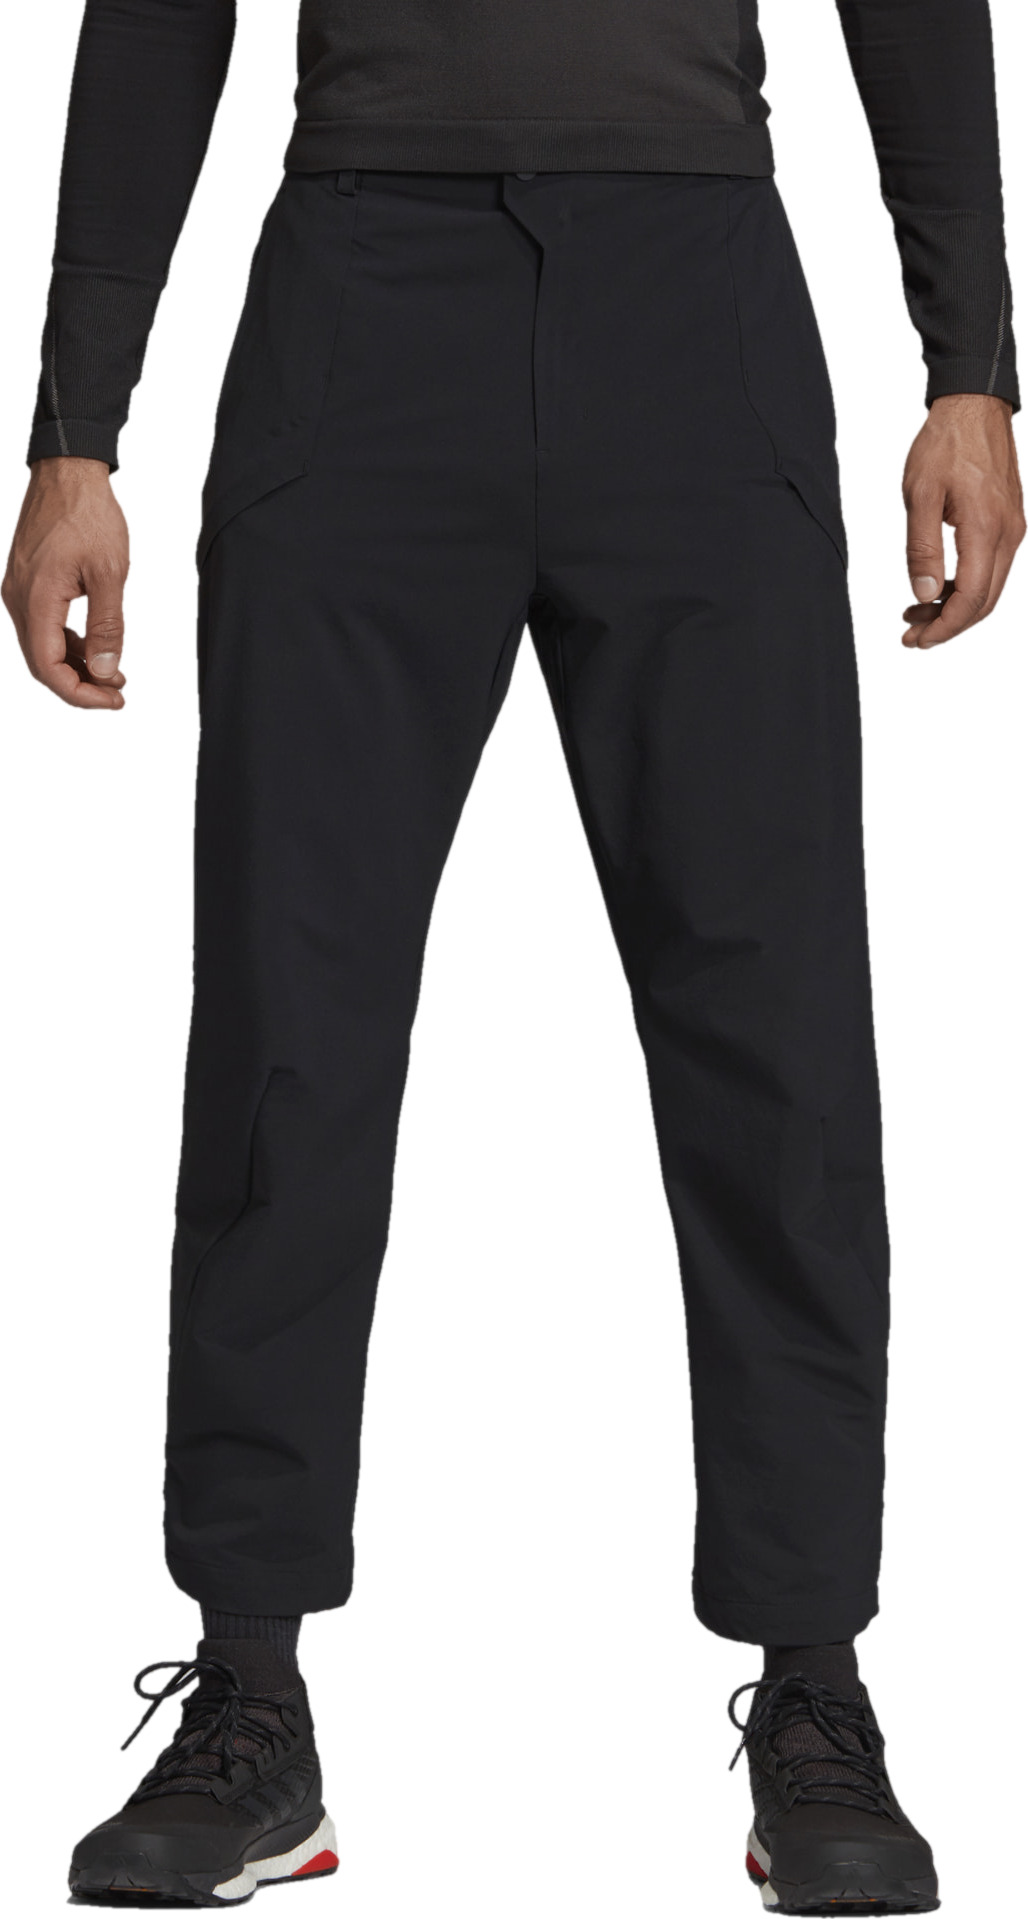 Спортивные брюки мужские Adidas M HIKING PANTS BLACK черные 50 RU, M HIKING PANTS BLACK, черный, хлопок; полиэстер  - купить